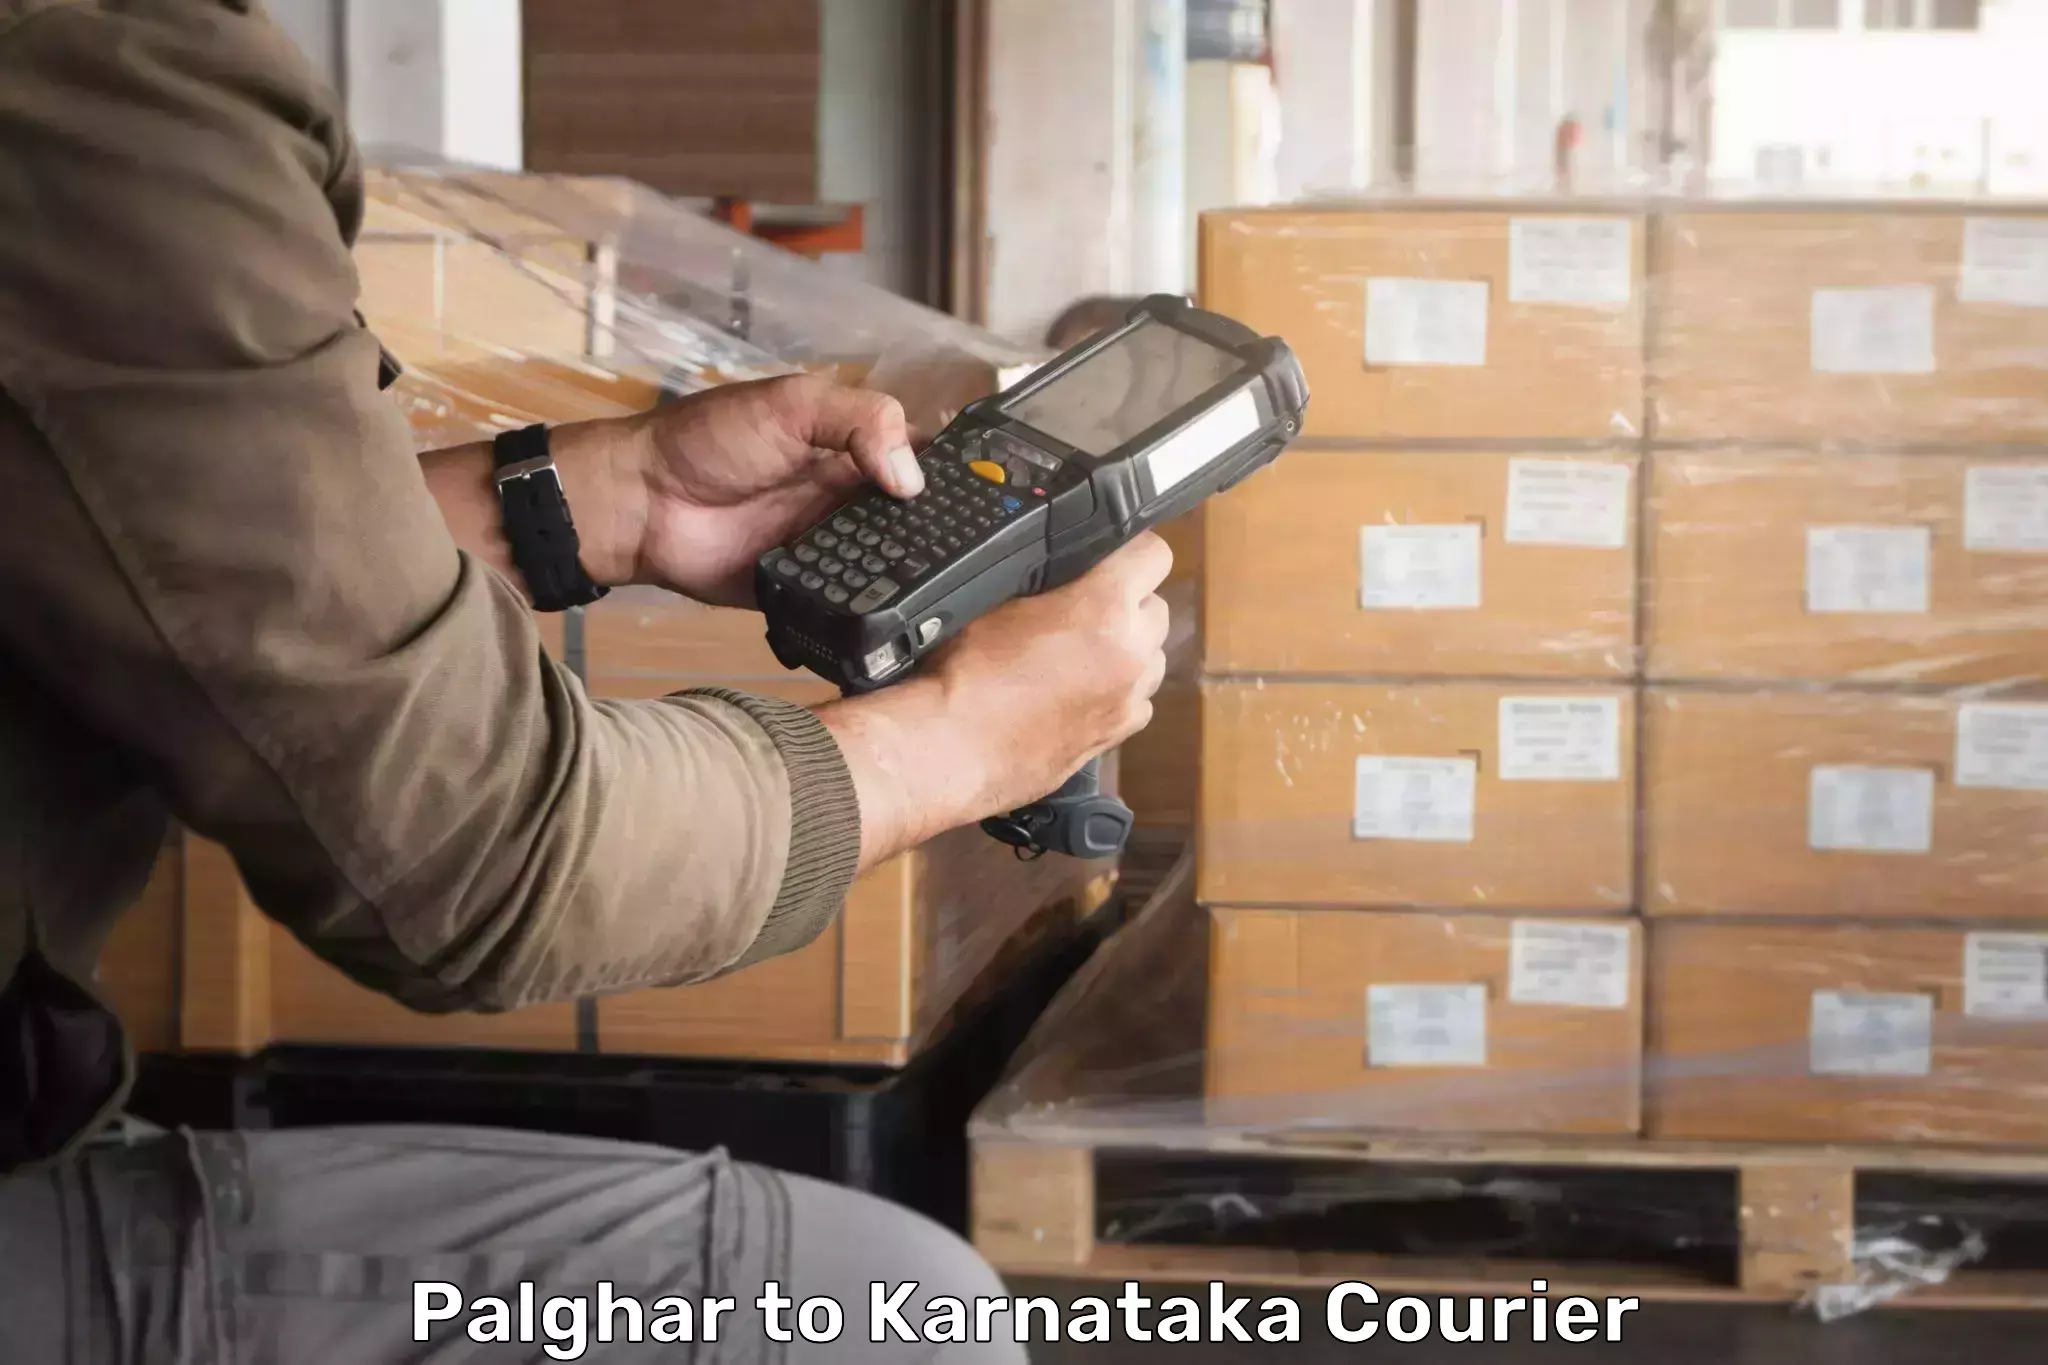 Customer-focused courier Palghar to Navalgund